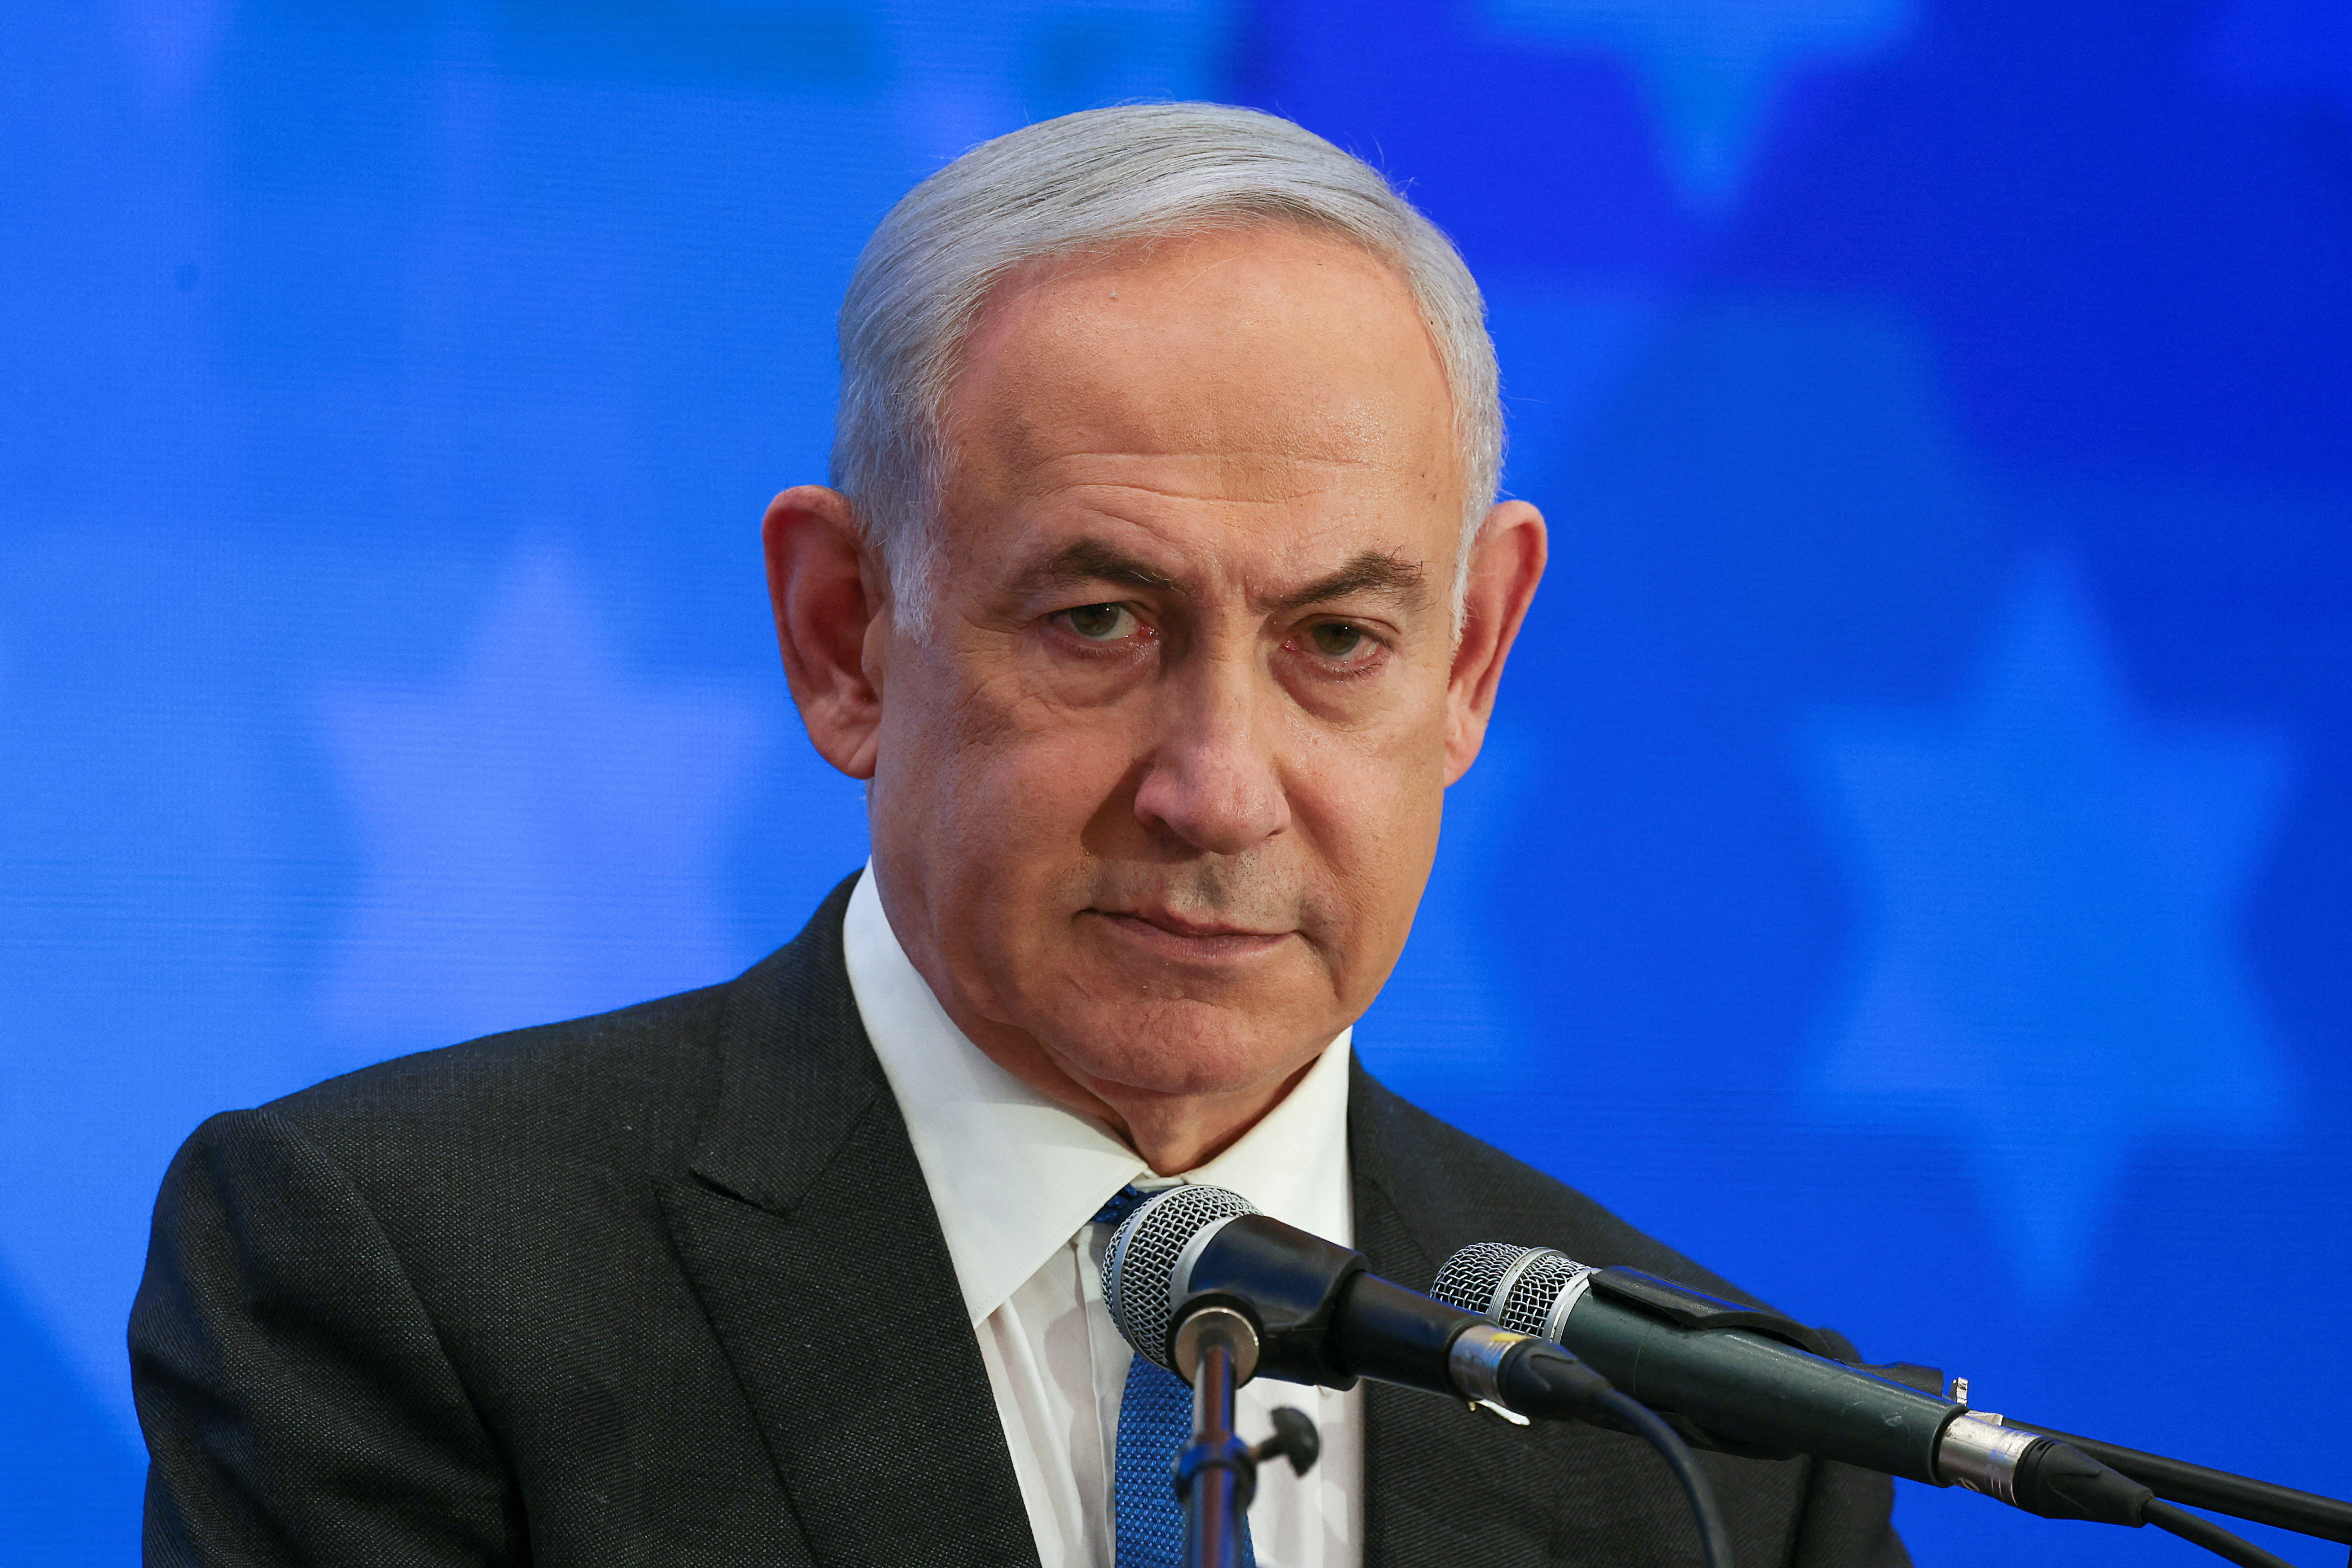 イスラエル、代表団の訪米を再計画 中止から一転＝米当局者 - ロイター (Reuters Japan)